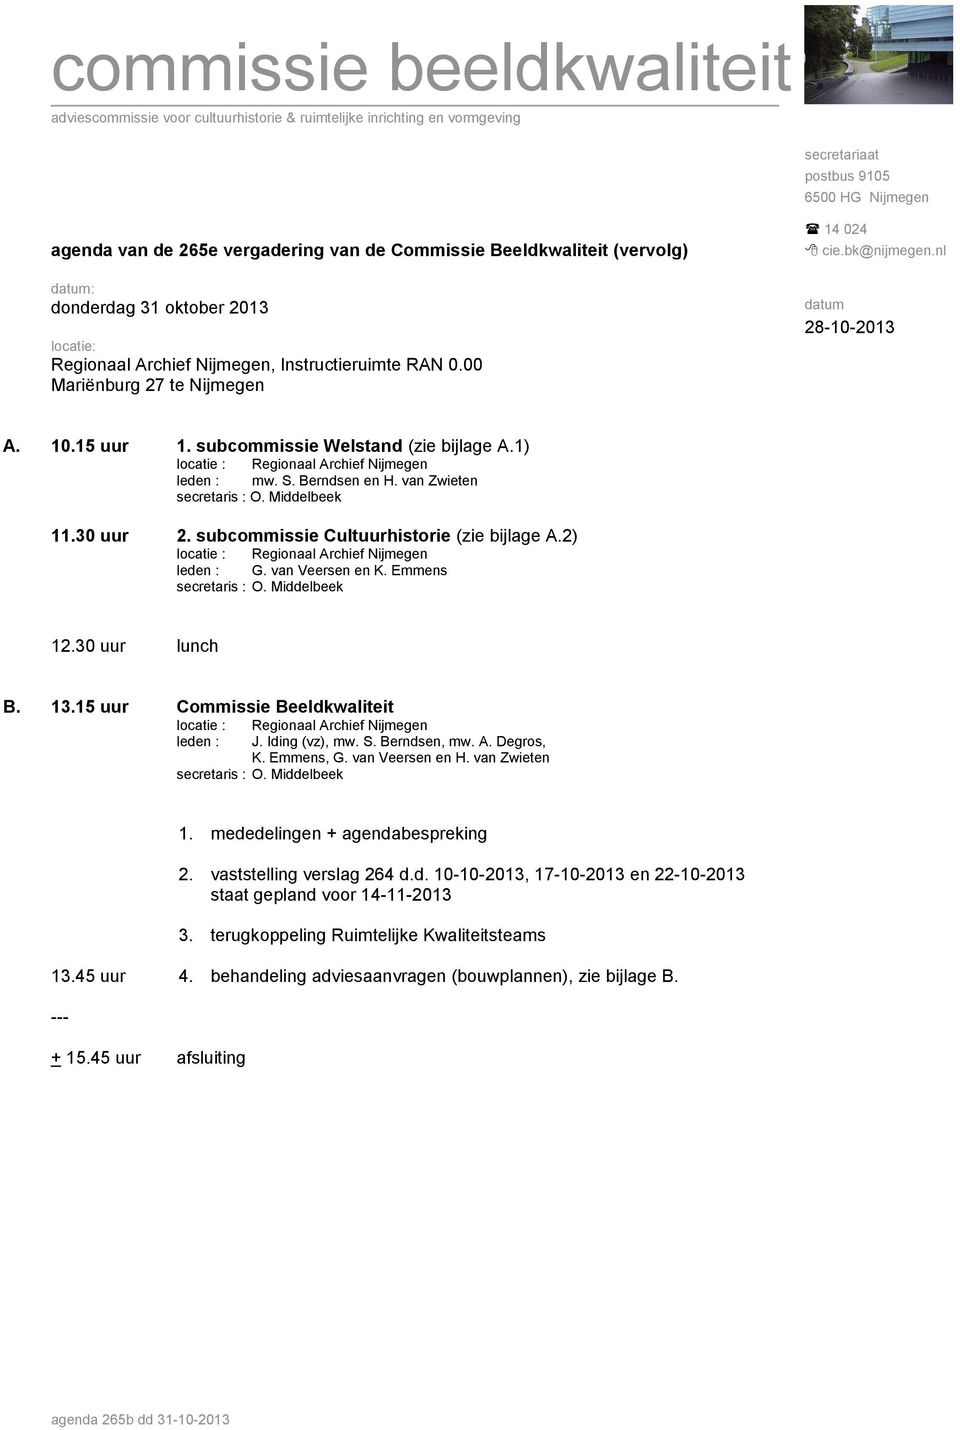 subcommissie Welstand (zie bijlage A.1) leden : mw. S. Berndsen en H. van Zwieten 11.30 uur 2. subcommissie Cultuurhistorie (zie bijlage A.2) leden : G. van Veersen en K. Emmens 12.30 uur lunch B. 13.